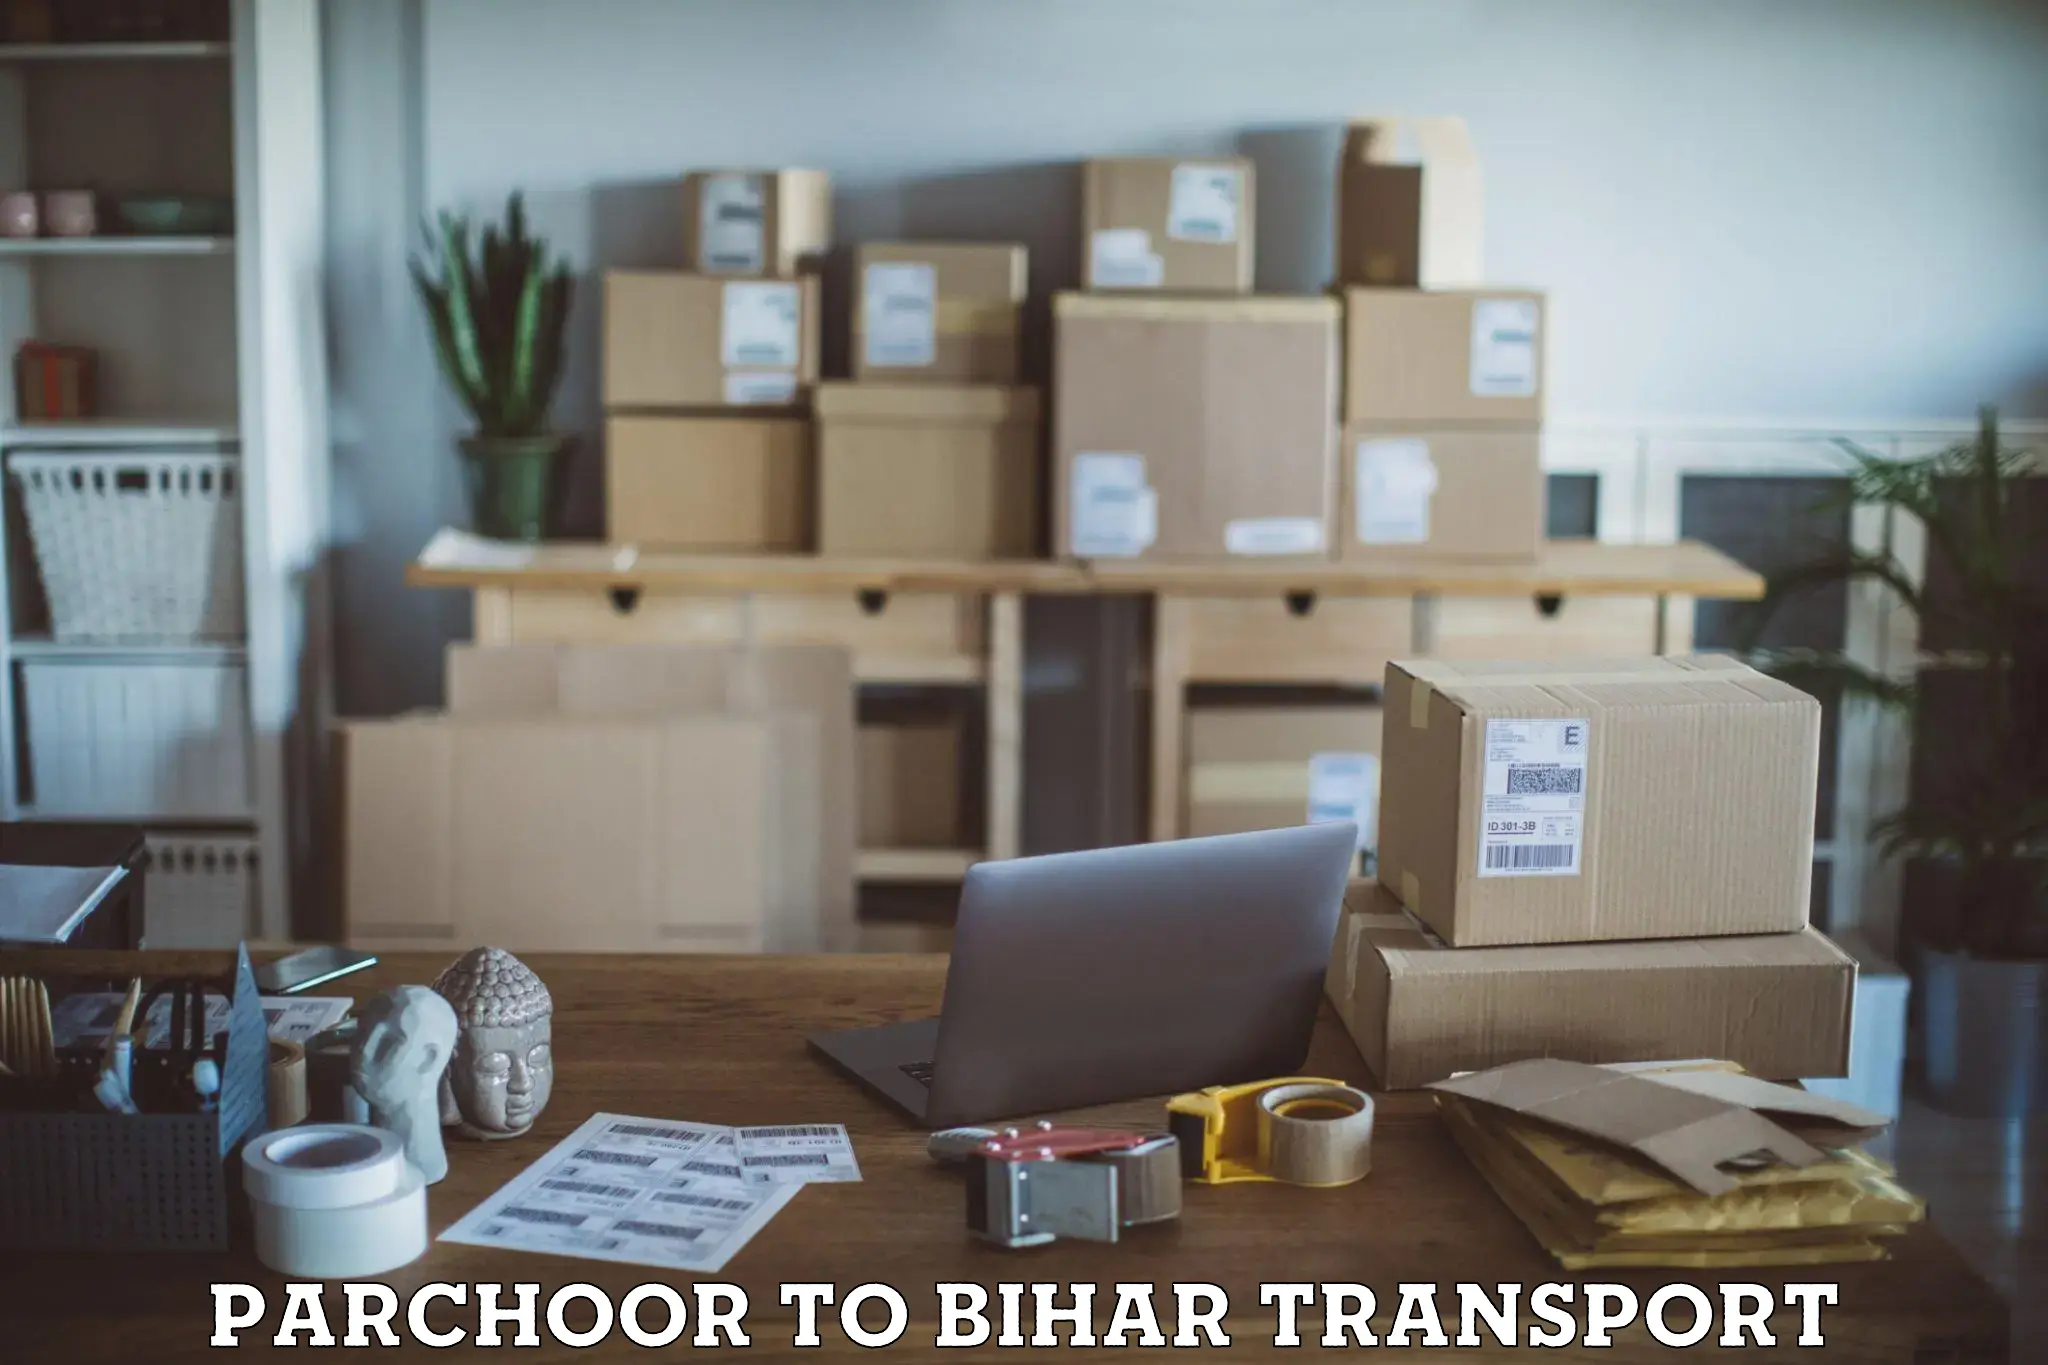 Air cargo transport services Parchoor to Bhorey